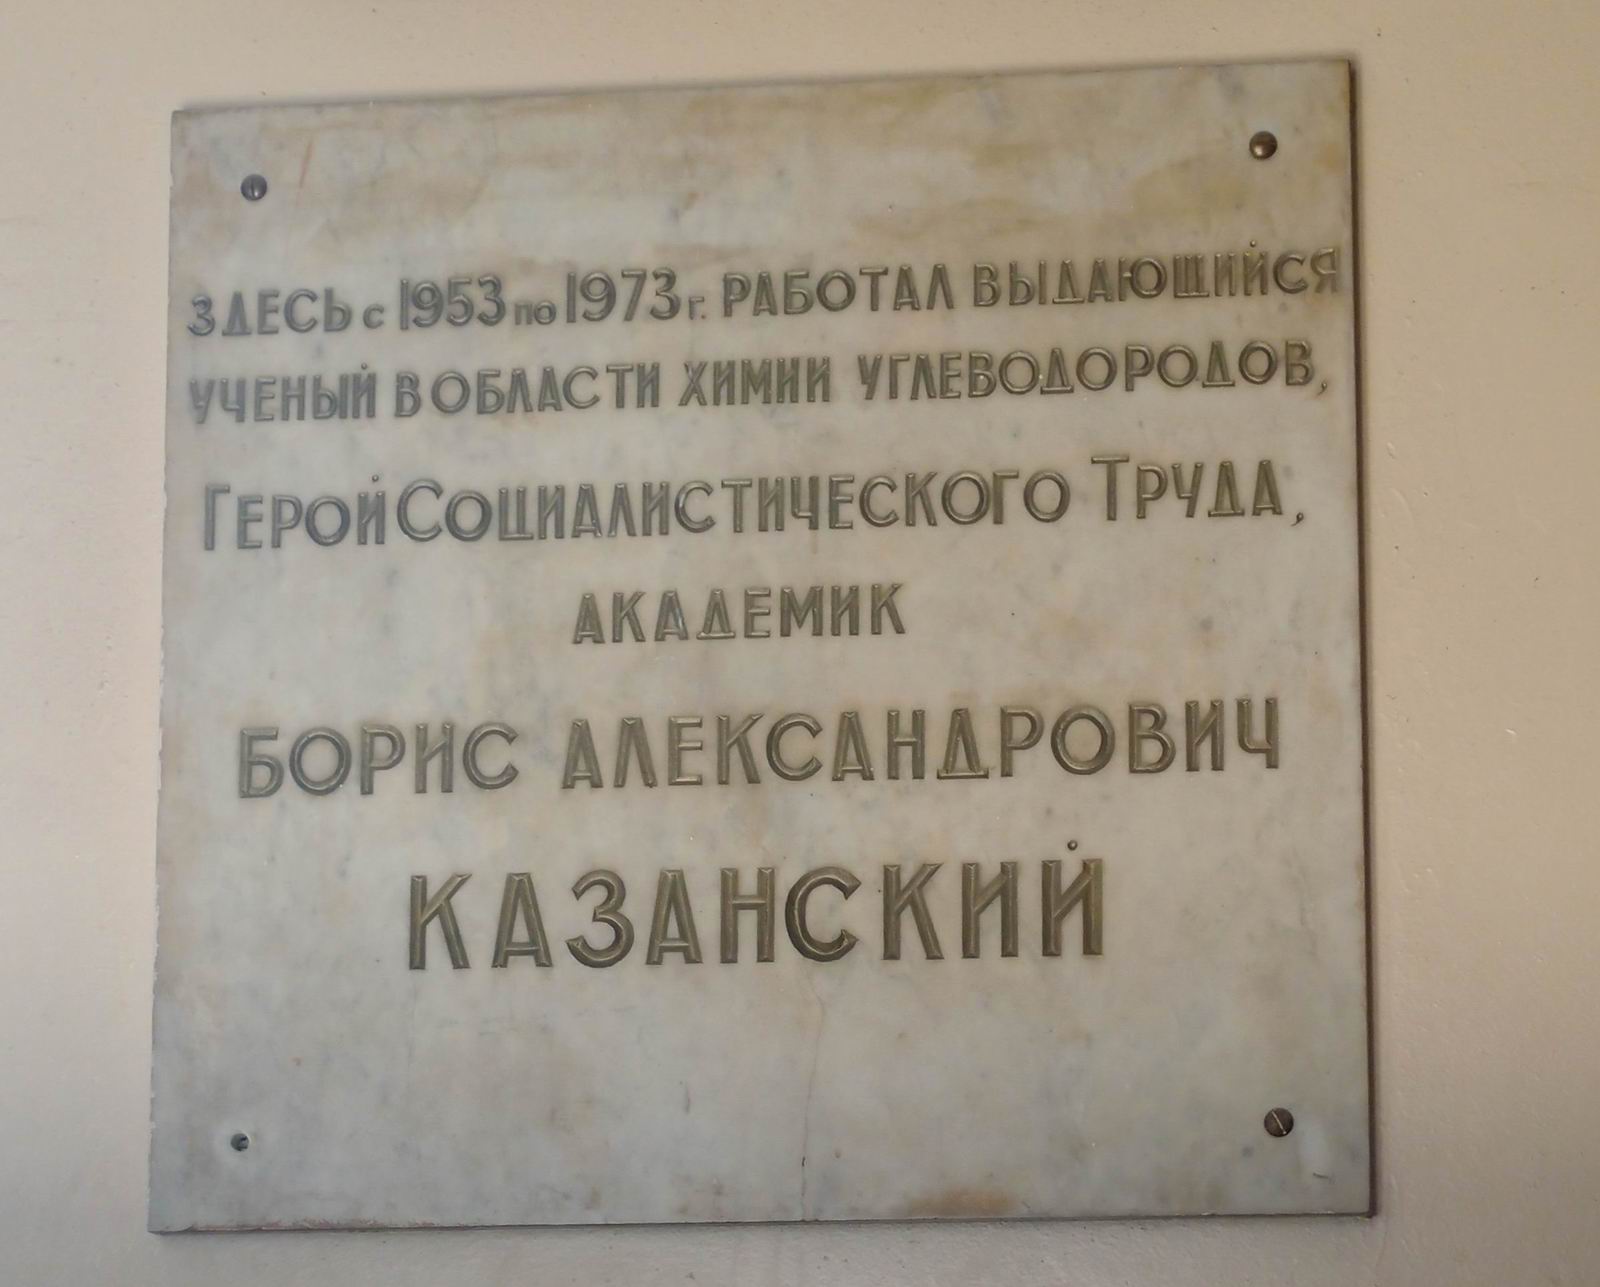 Мемориальная доска Казанскому Б.А. (1891–1973), на Ленинских горах, владение 1, строение 3 (в корпусе Химического факультета МГУ), открыта в 1974.